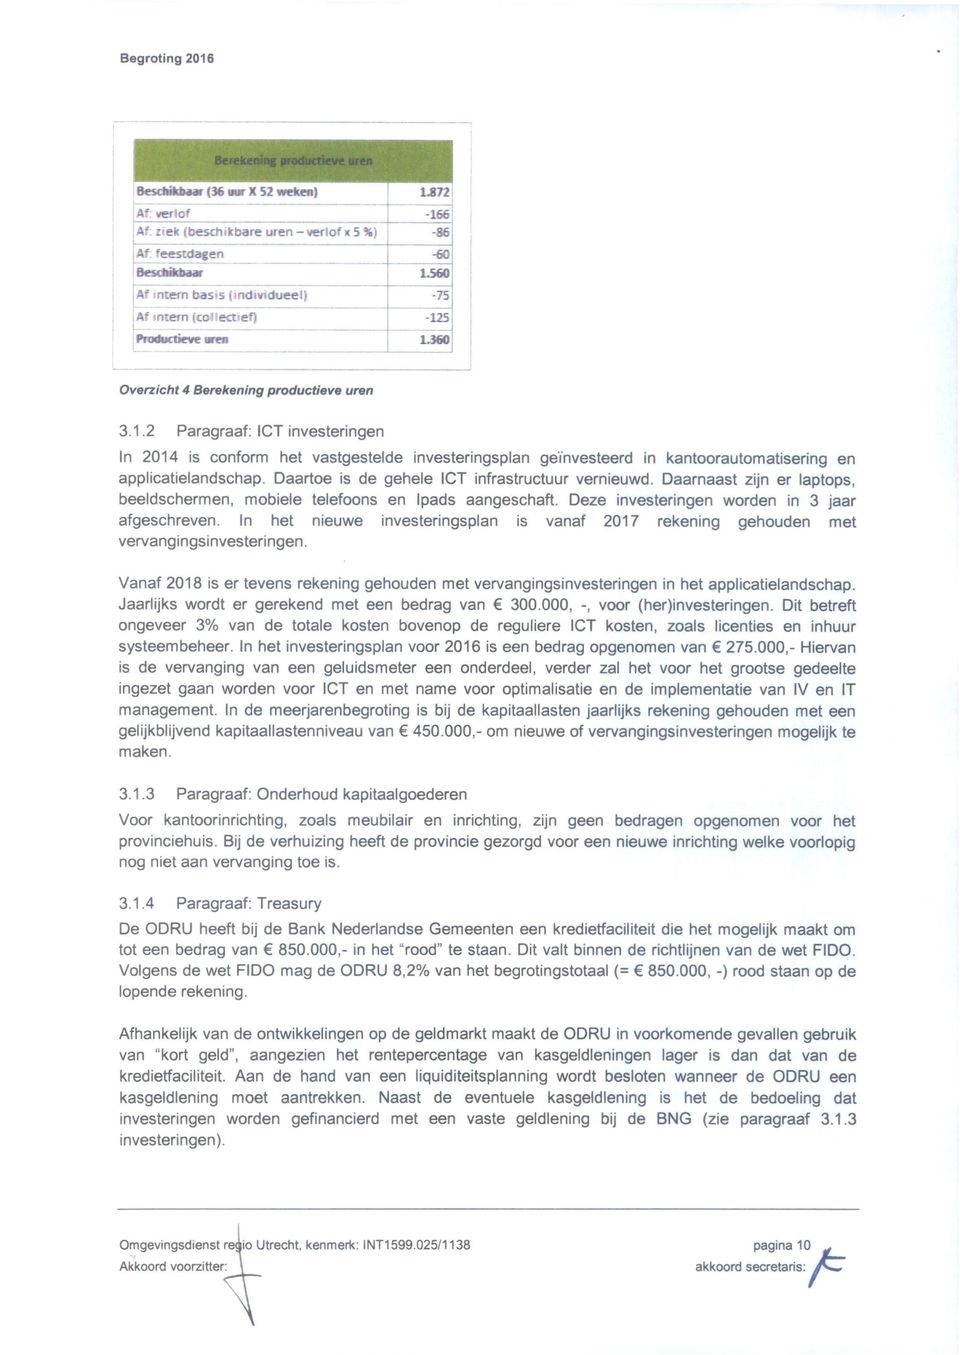 uren 3.1.2 Paragraaf: ICT investeringen In 2014 is conform het vastgestelde investeringsplan geïnvesteerd in kantoorautomatisering en applicatielandschap.